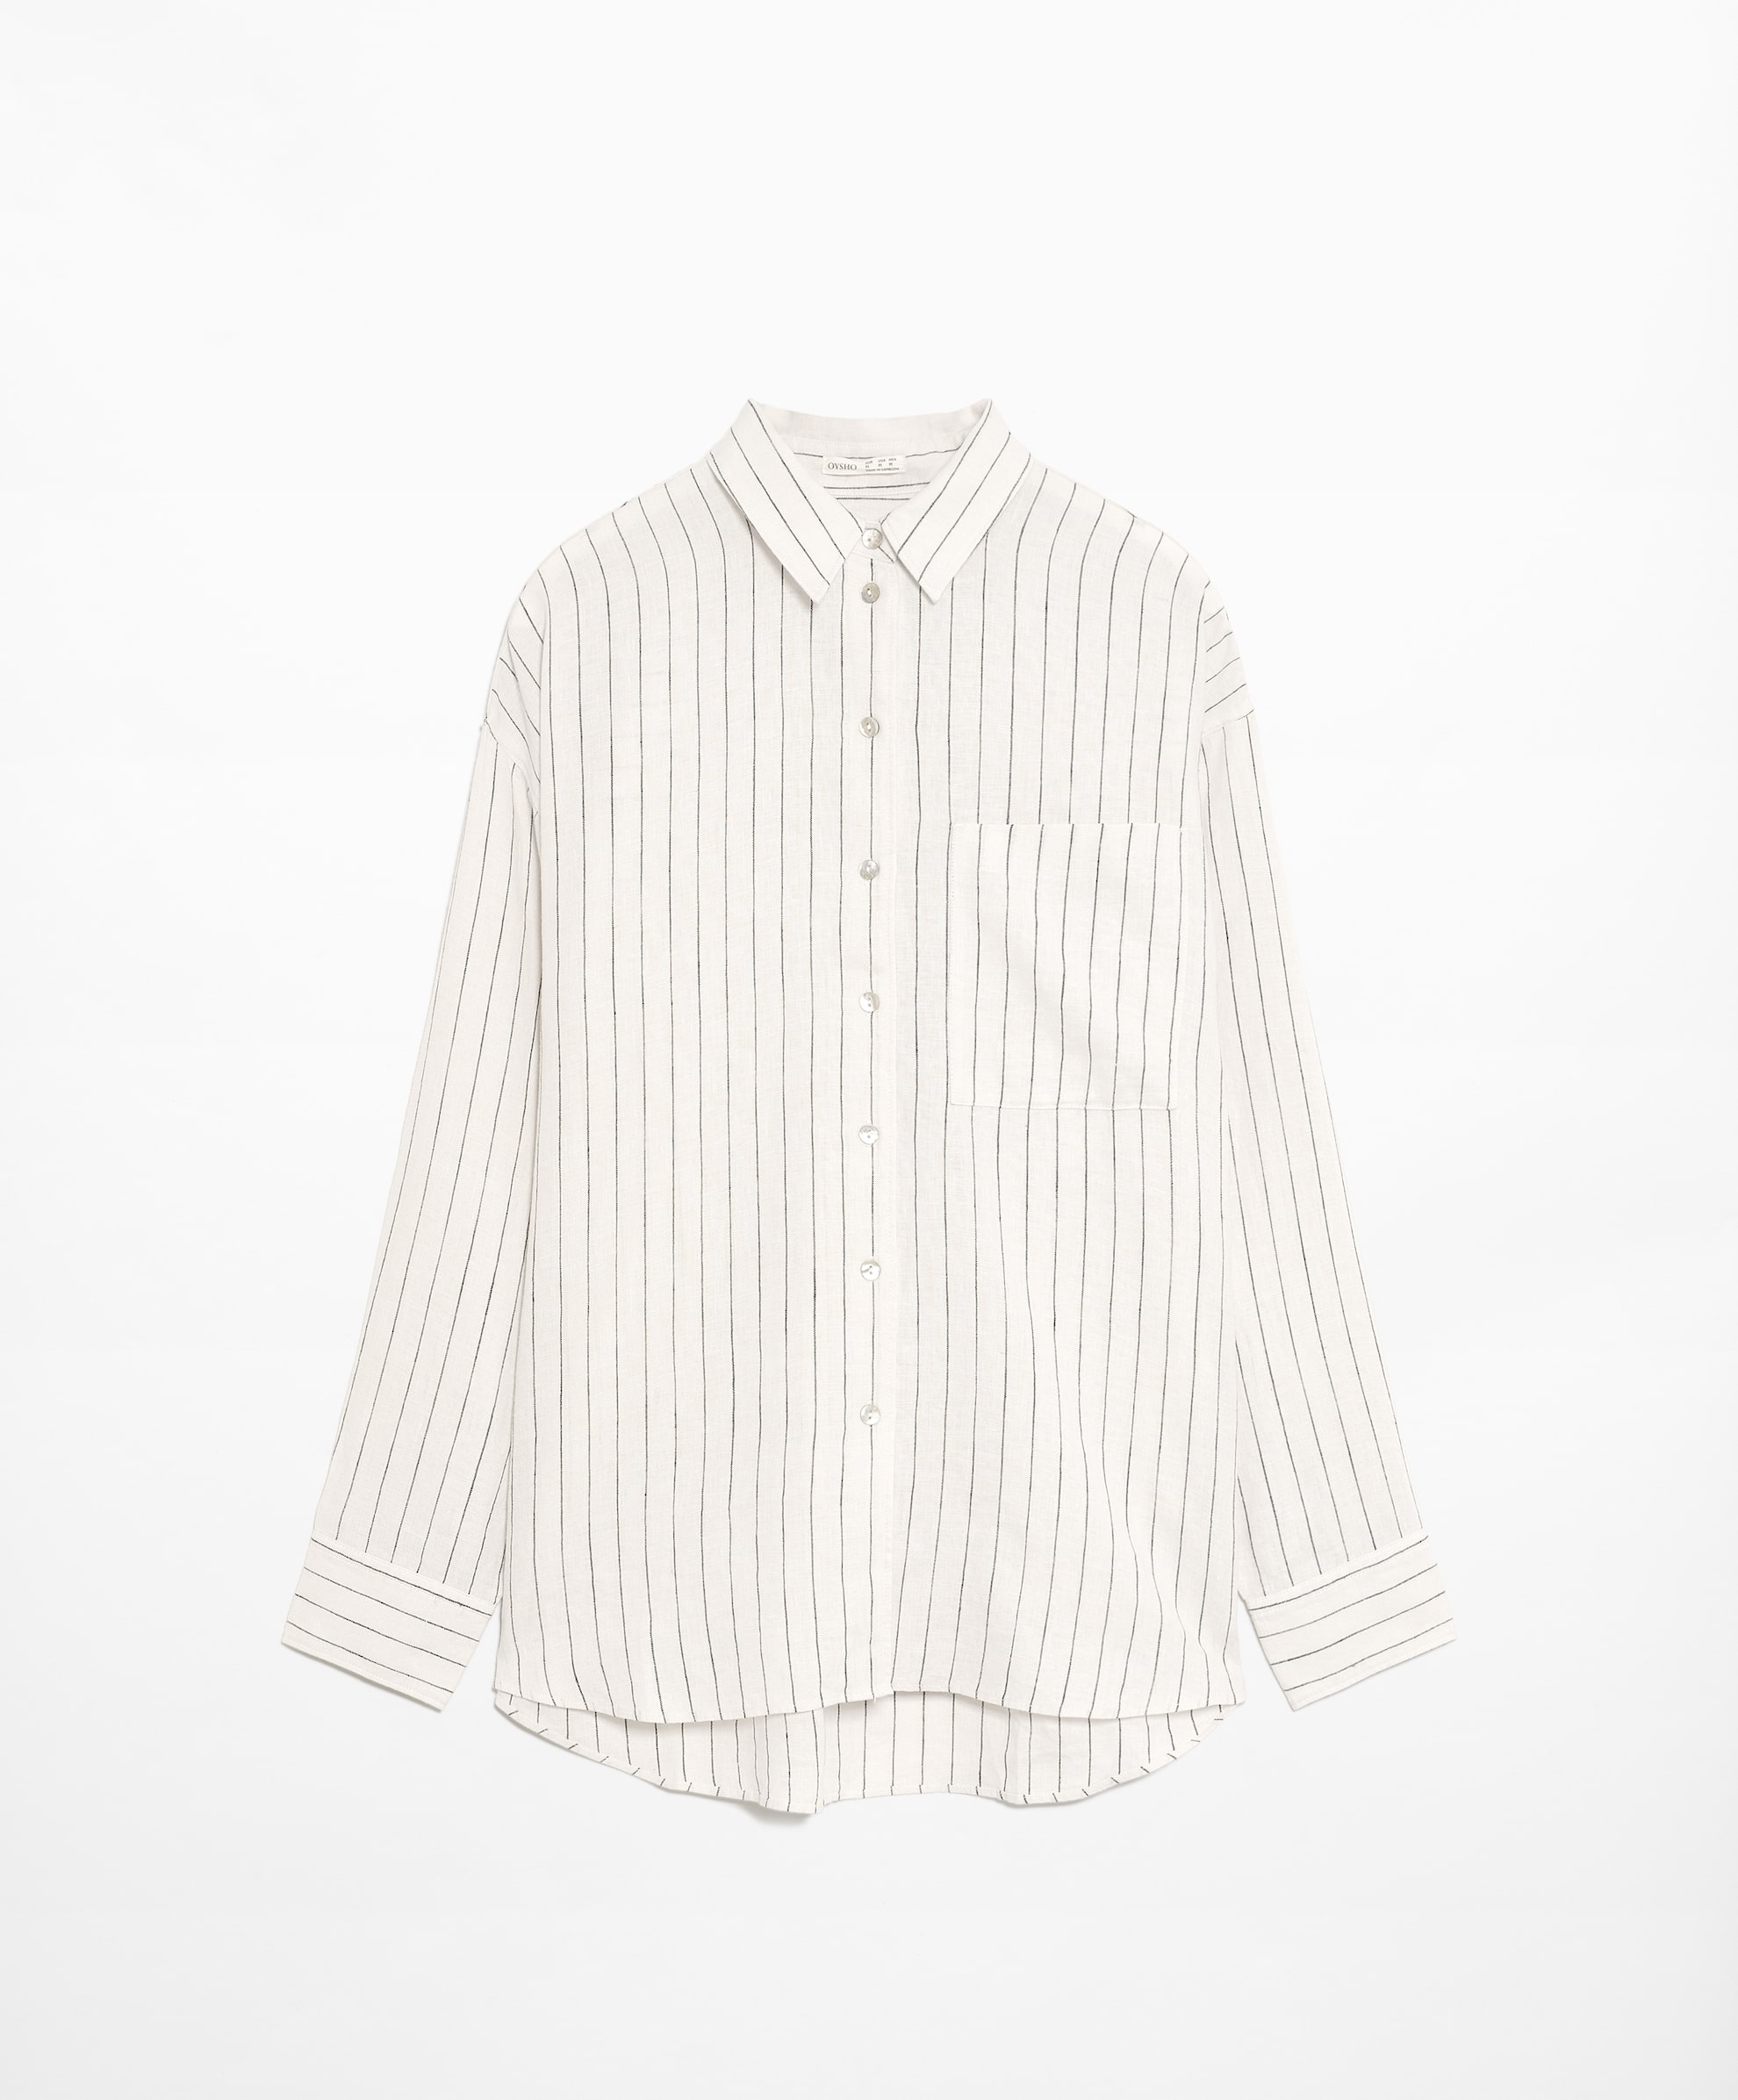 Рубашка Oysho Striped 100% Linen Long-sleeved, белый рубашка uniqlo premium linen striped long sleeved зеленый